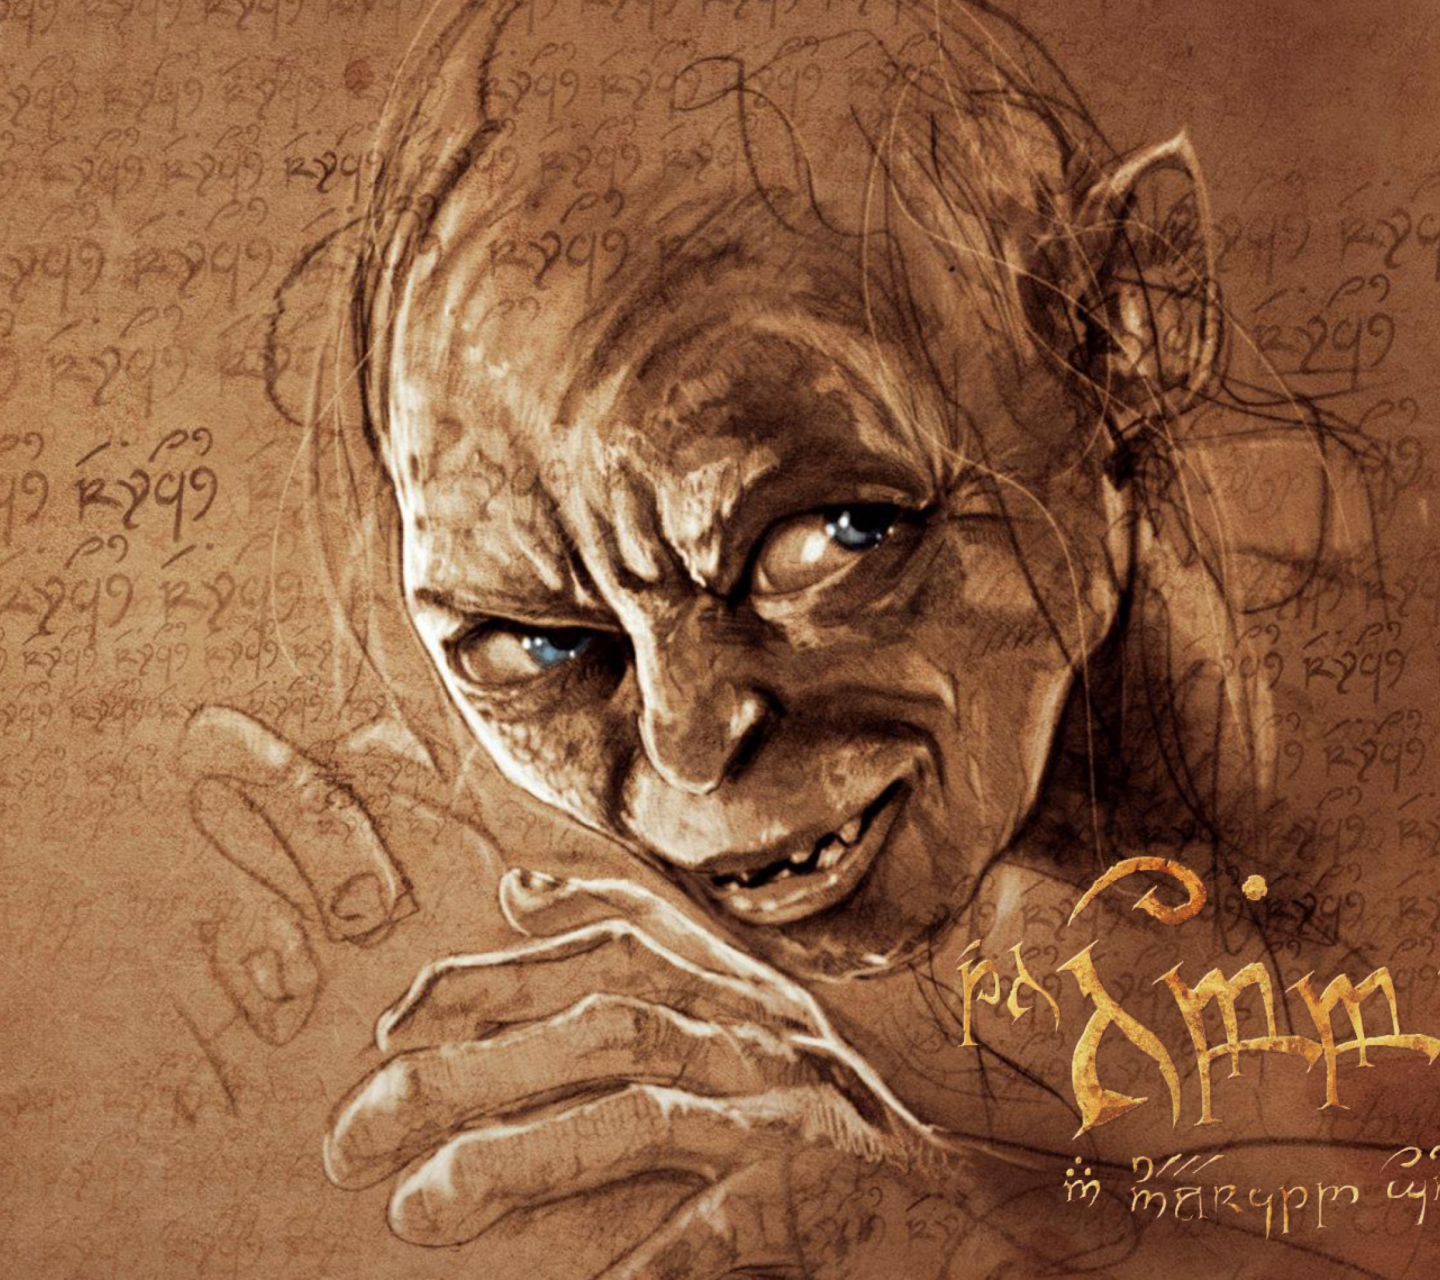 The Hobbit Gollum Artwork screenshot #1 1440x1280